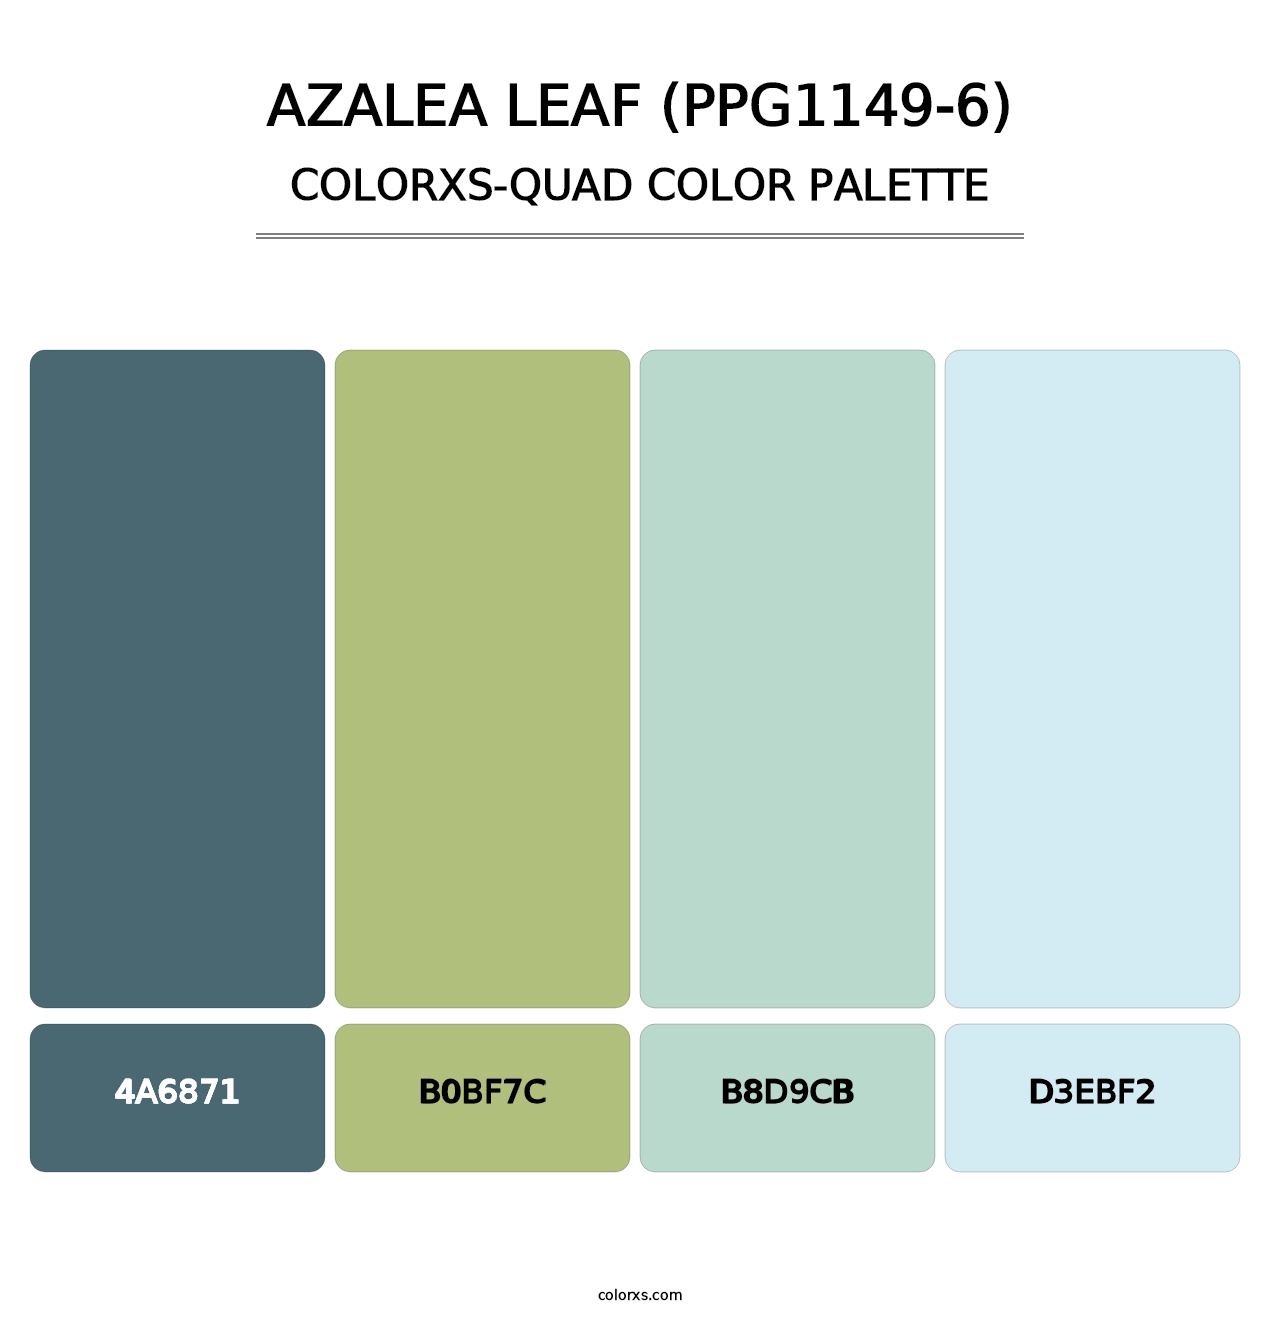 Azalea Leaf (PPG1149-6) - Colorxs Quad Palette